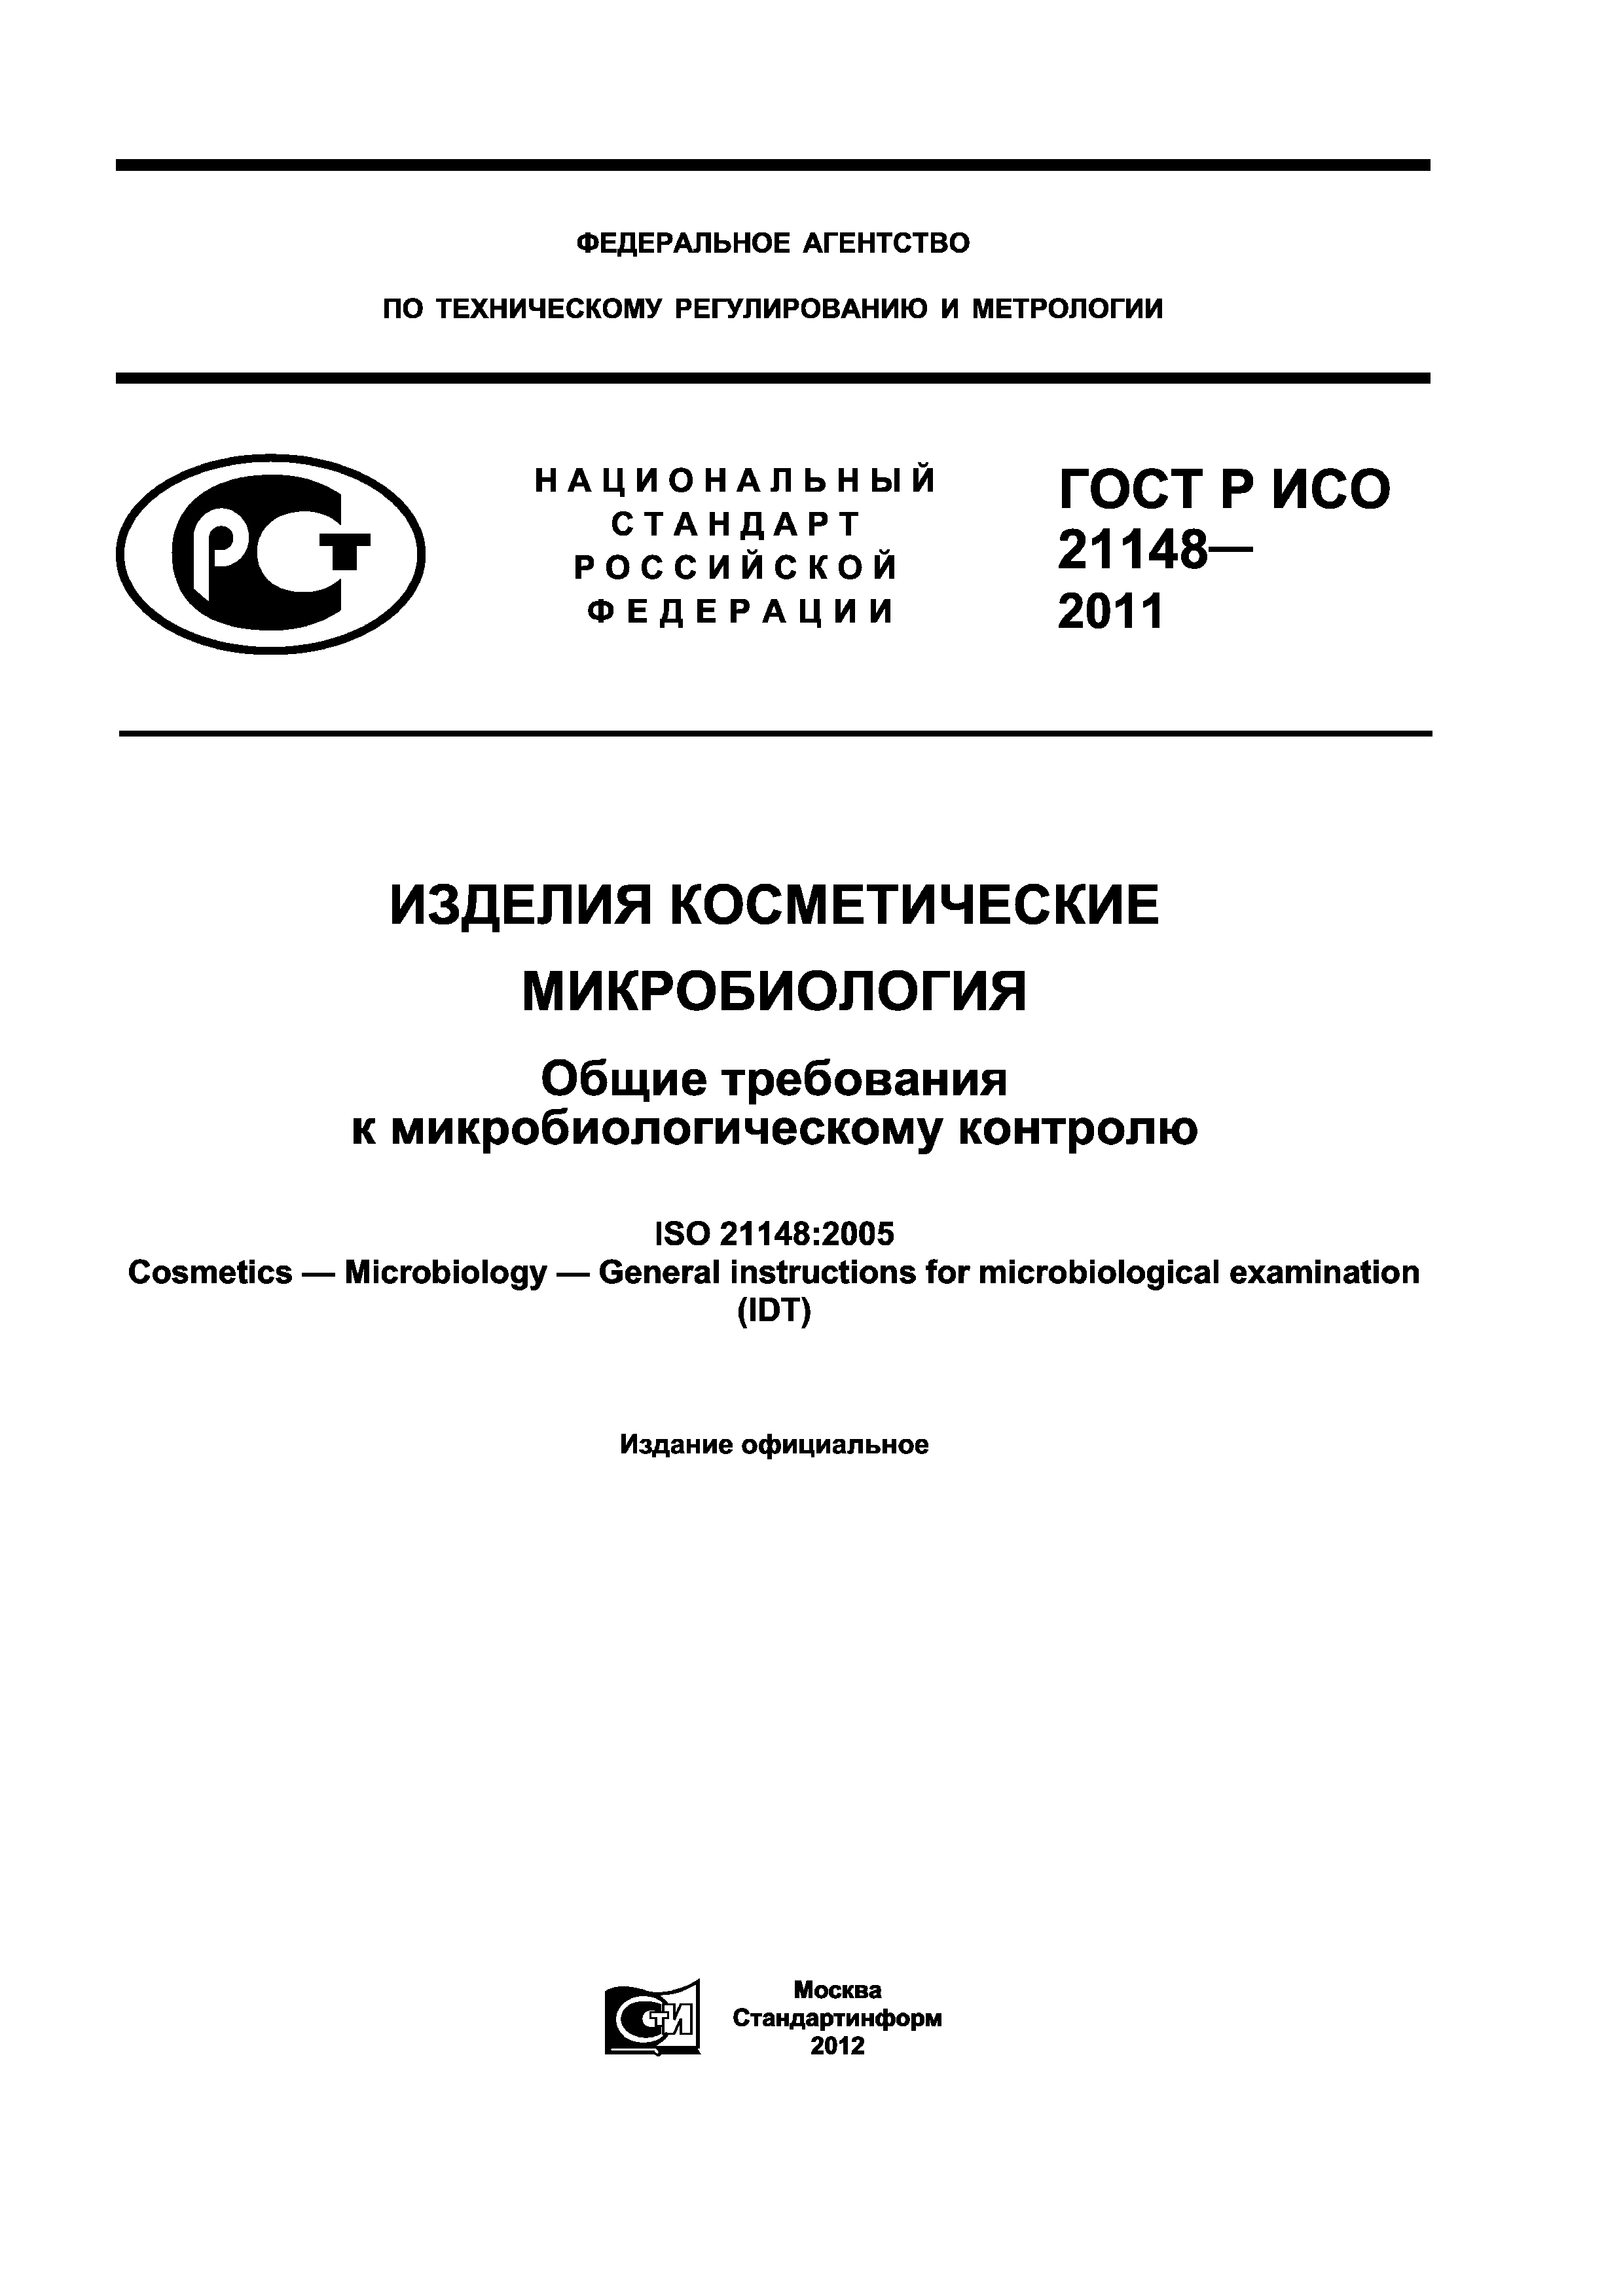 ГОСТ Р ИСО 21148-2011